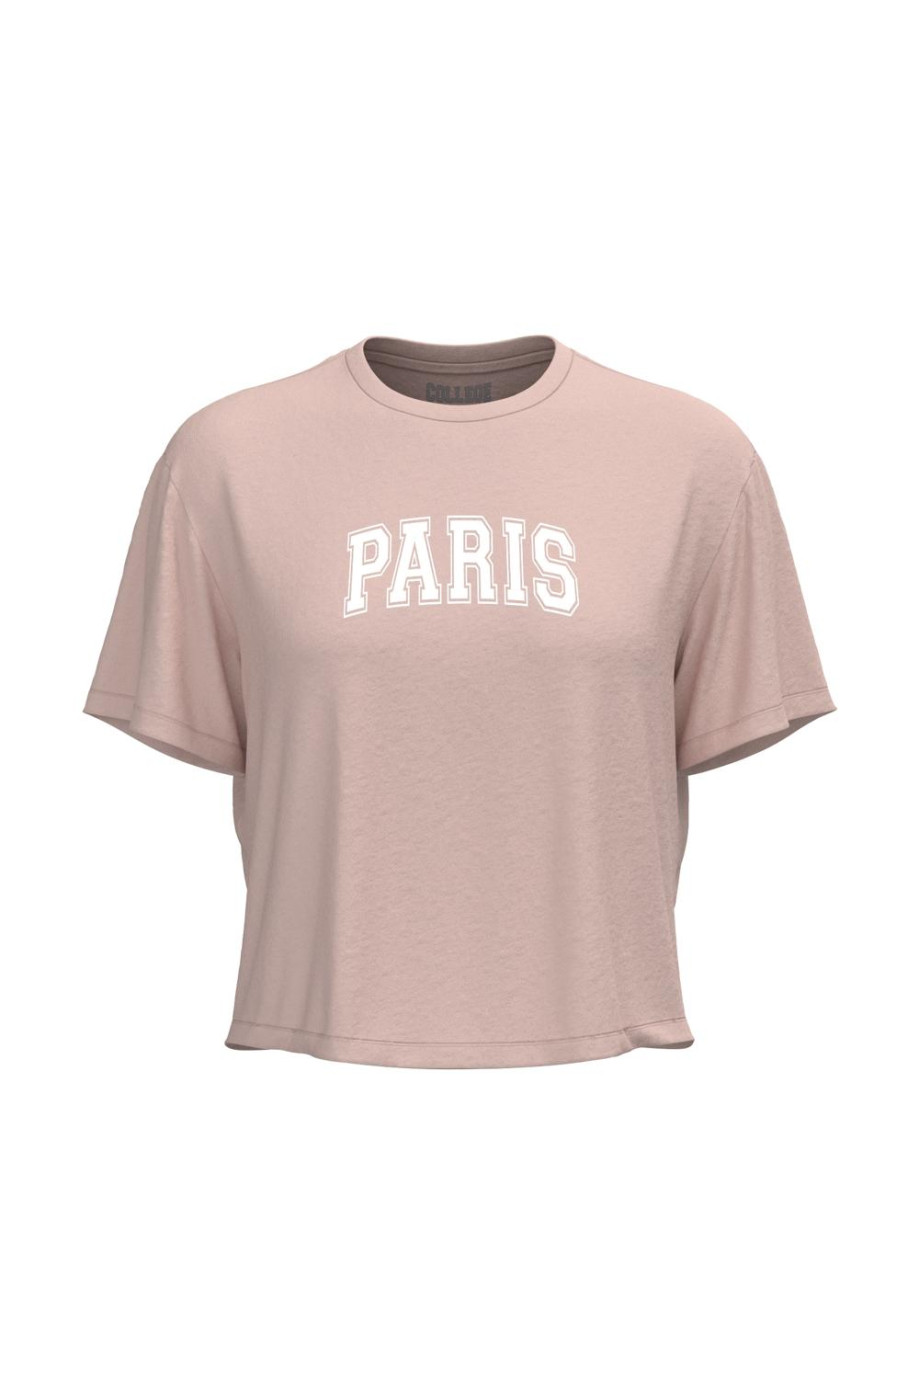 Camiseta unicolor crop top con texto college de París